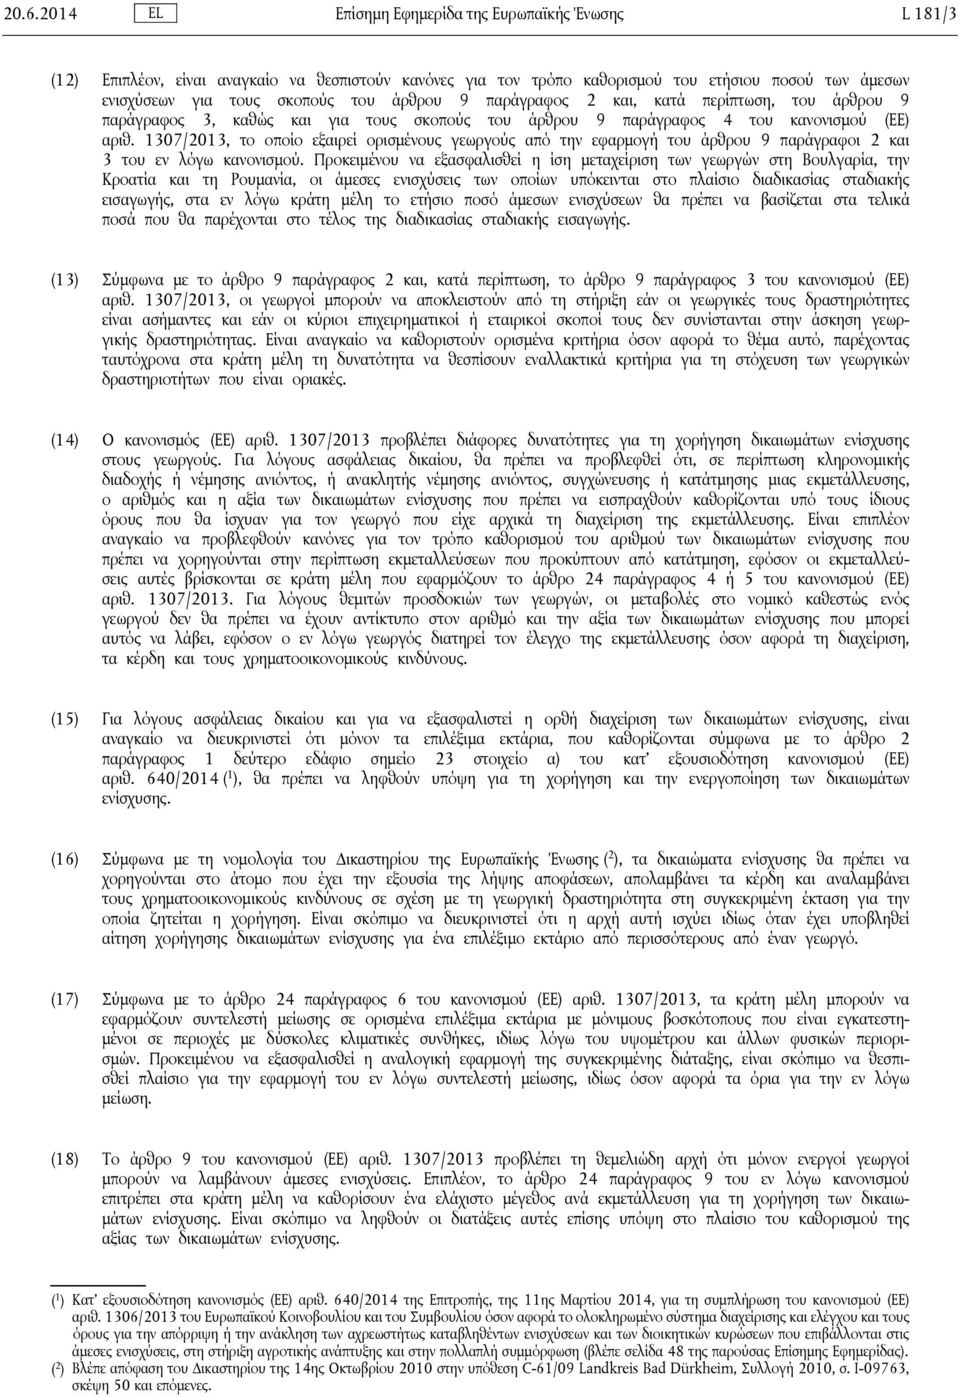 1307/2013, το οποίο εξαιρεί ορισμένους γεωργούς από την εφαρμογή του άρθρου 9 παράγραφοι 2 και 3 του εν λόγω κανονισμού.